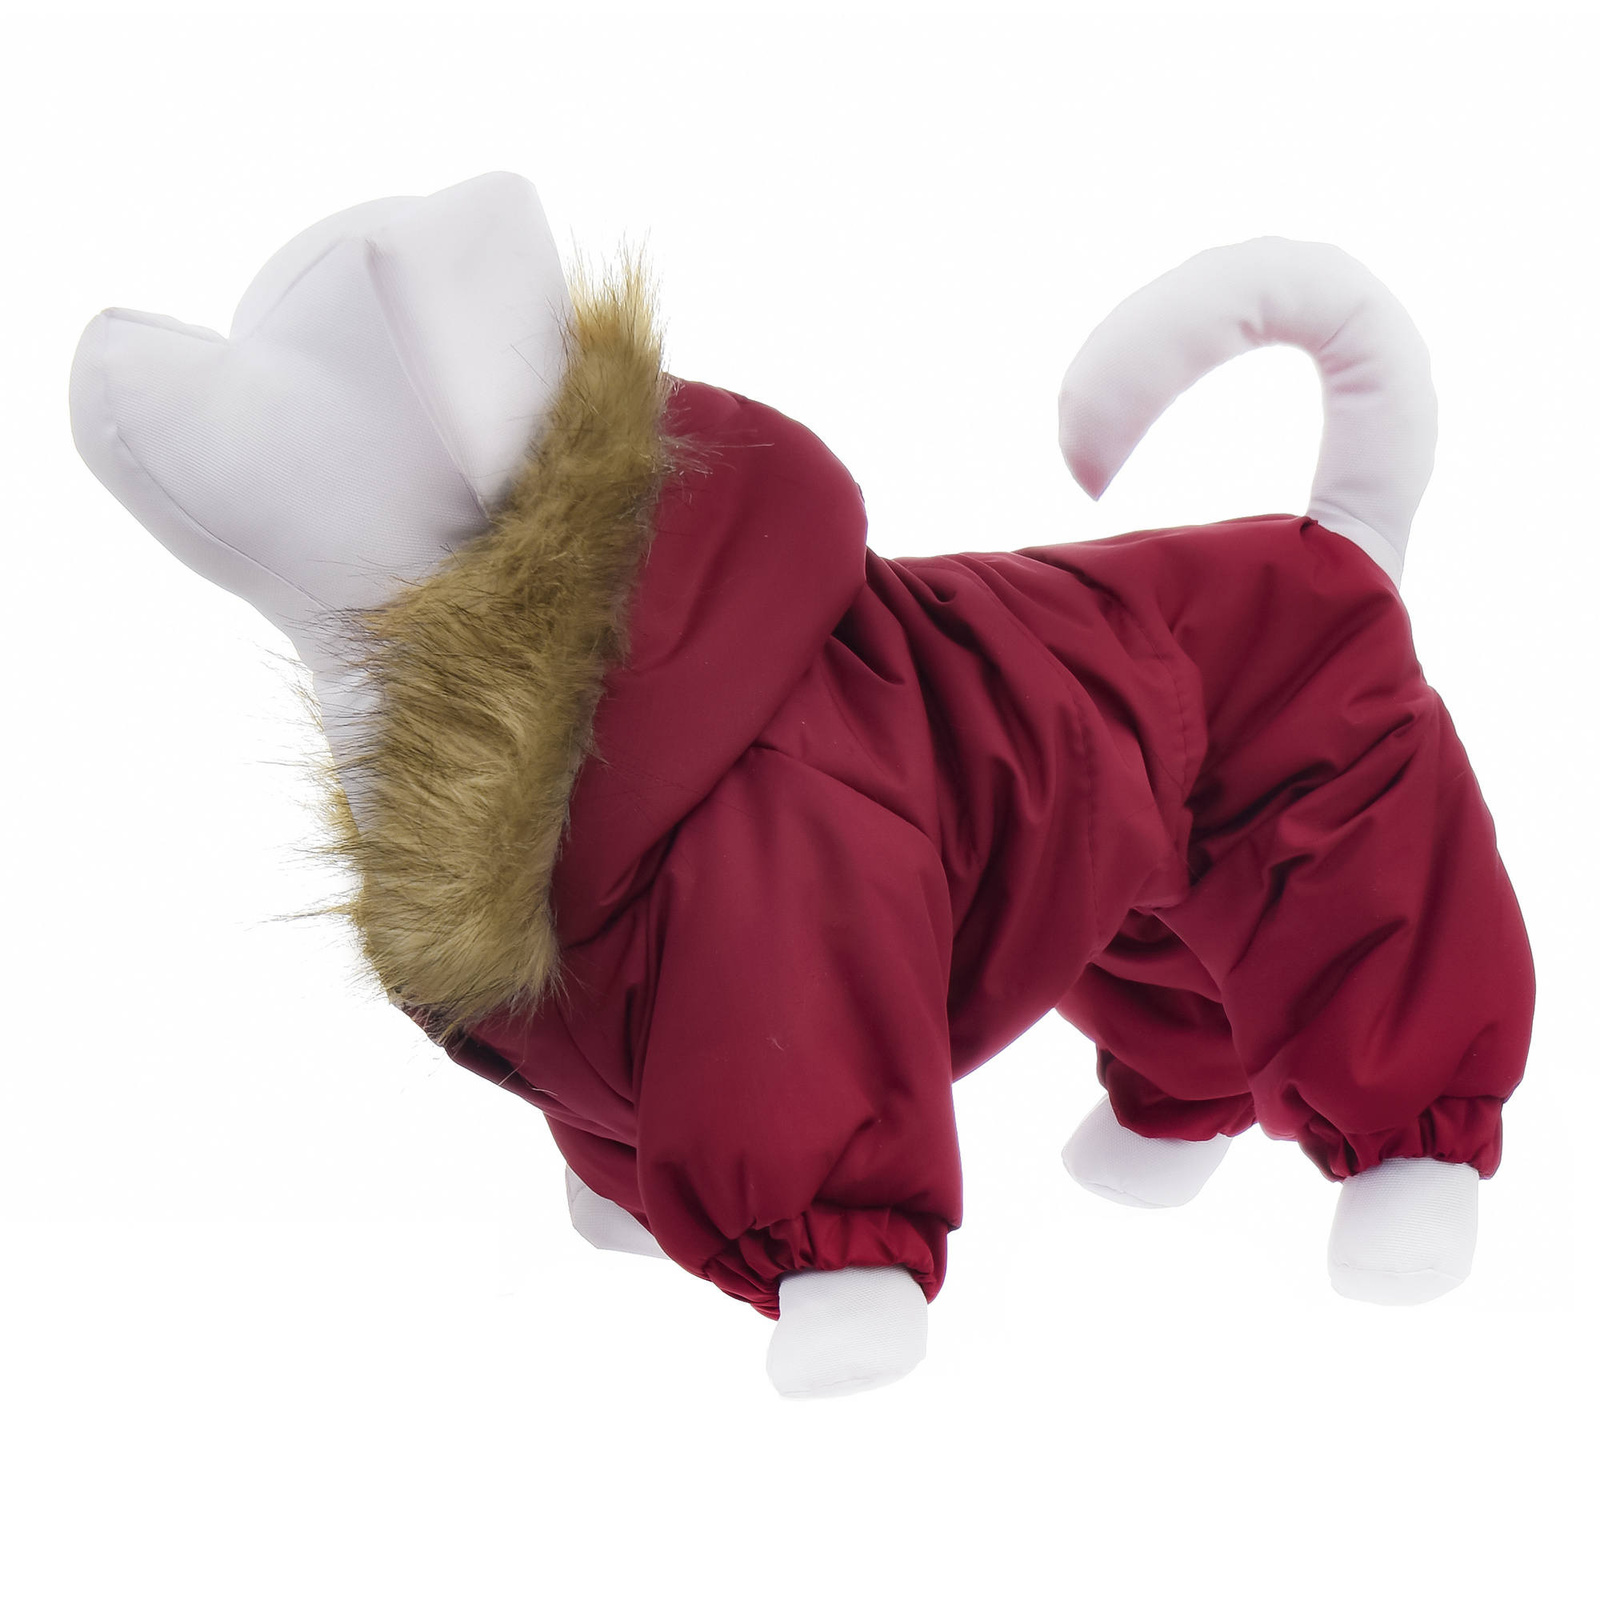 Yami-Yami одежда Yami-Yami одежда комбинезон для собак с капюшоном, на меховой подкладке, бордовый (100 г) шлейка yami yami вайда трехслойная текстильная джинс 3d сетка для собак l 32 38 см